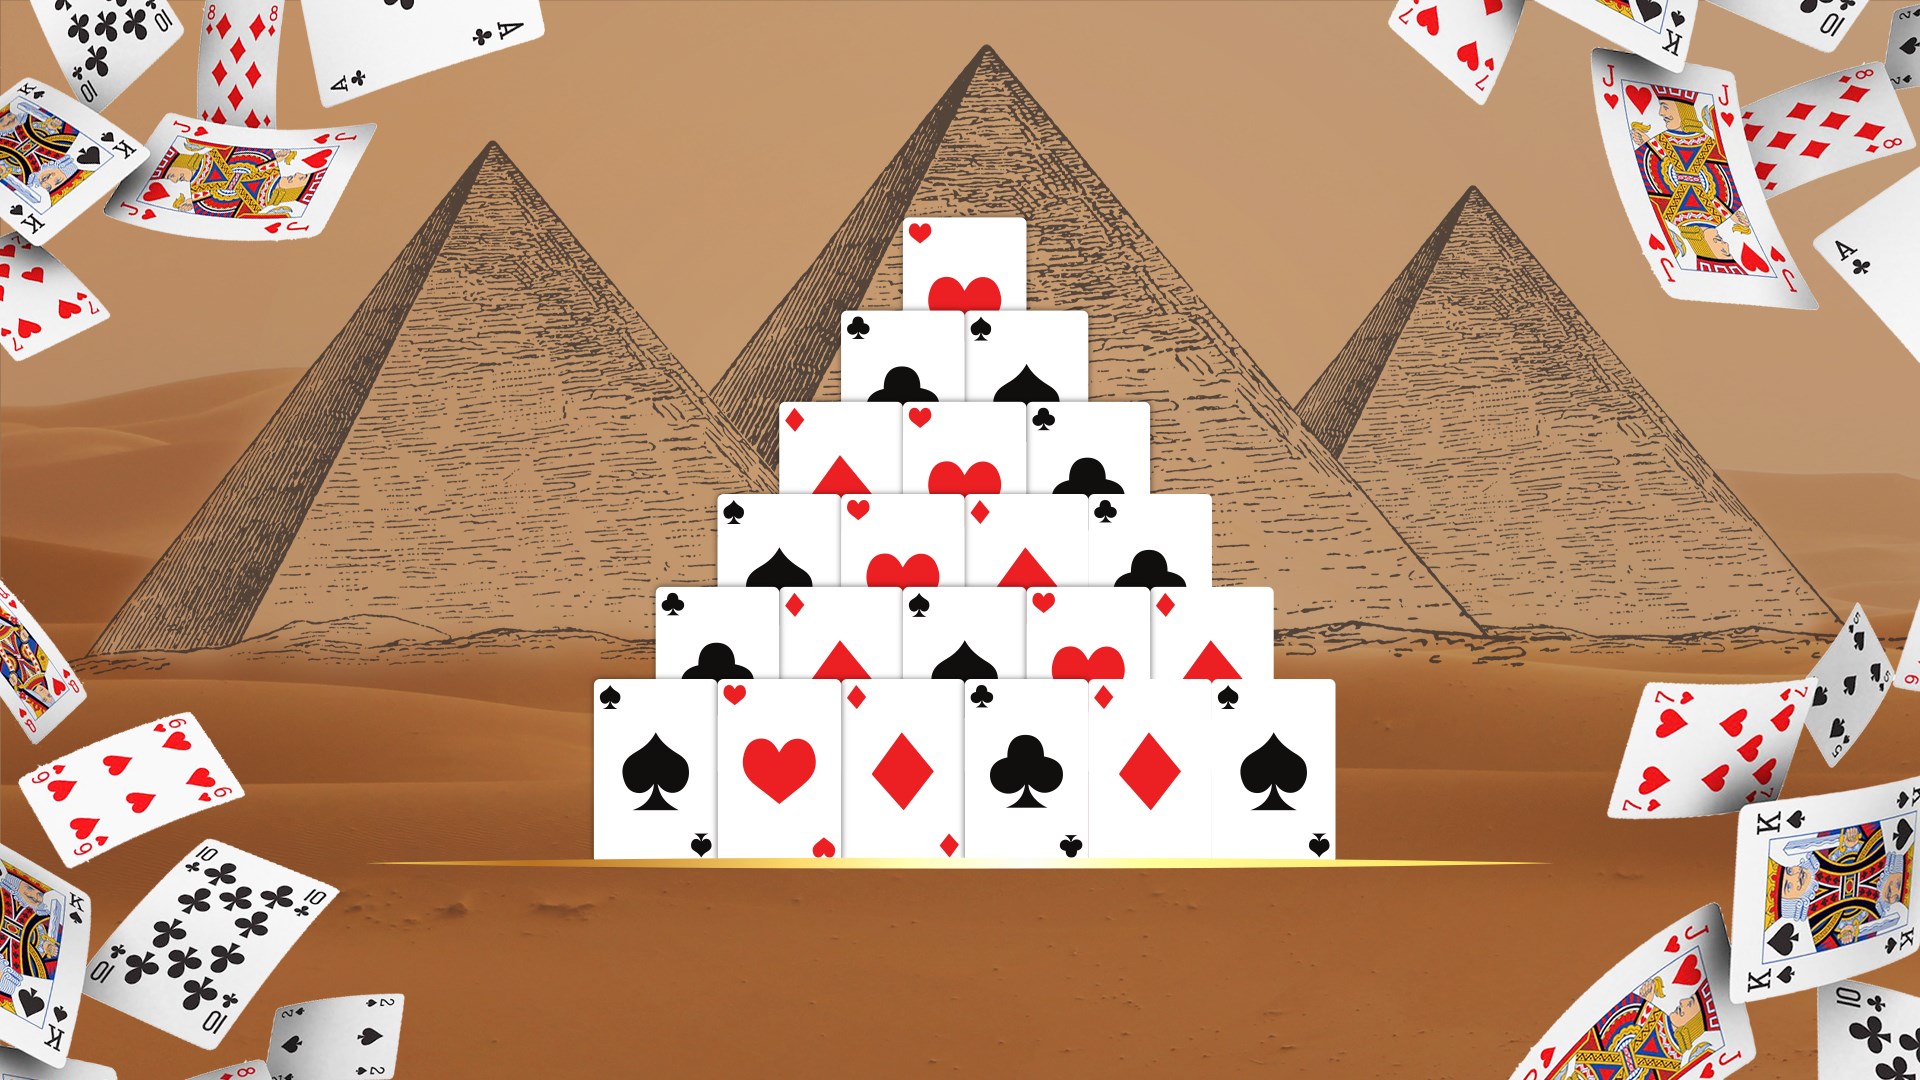 Paciência Pirâmide - jogo de Paciência online grátis jogar agora!